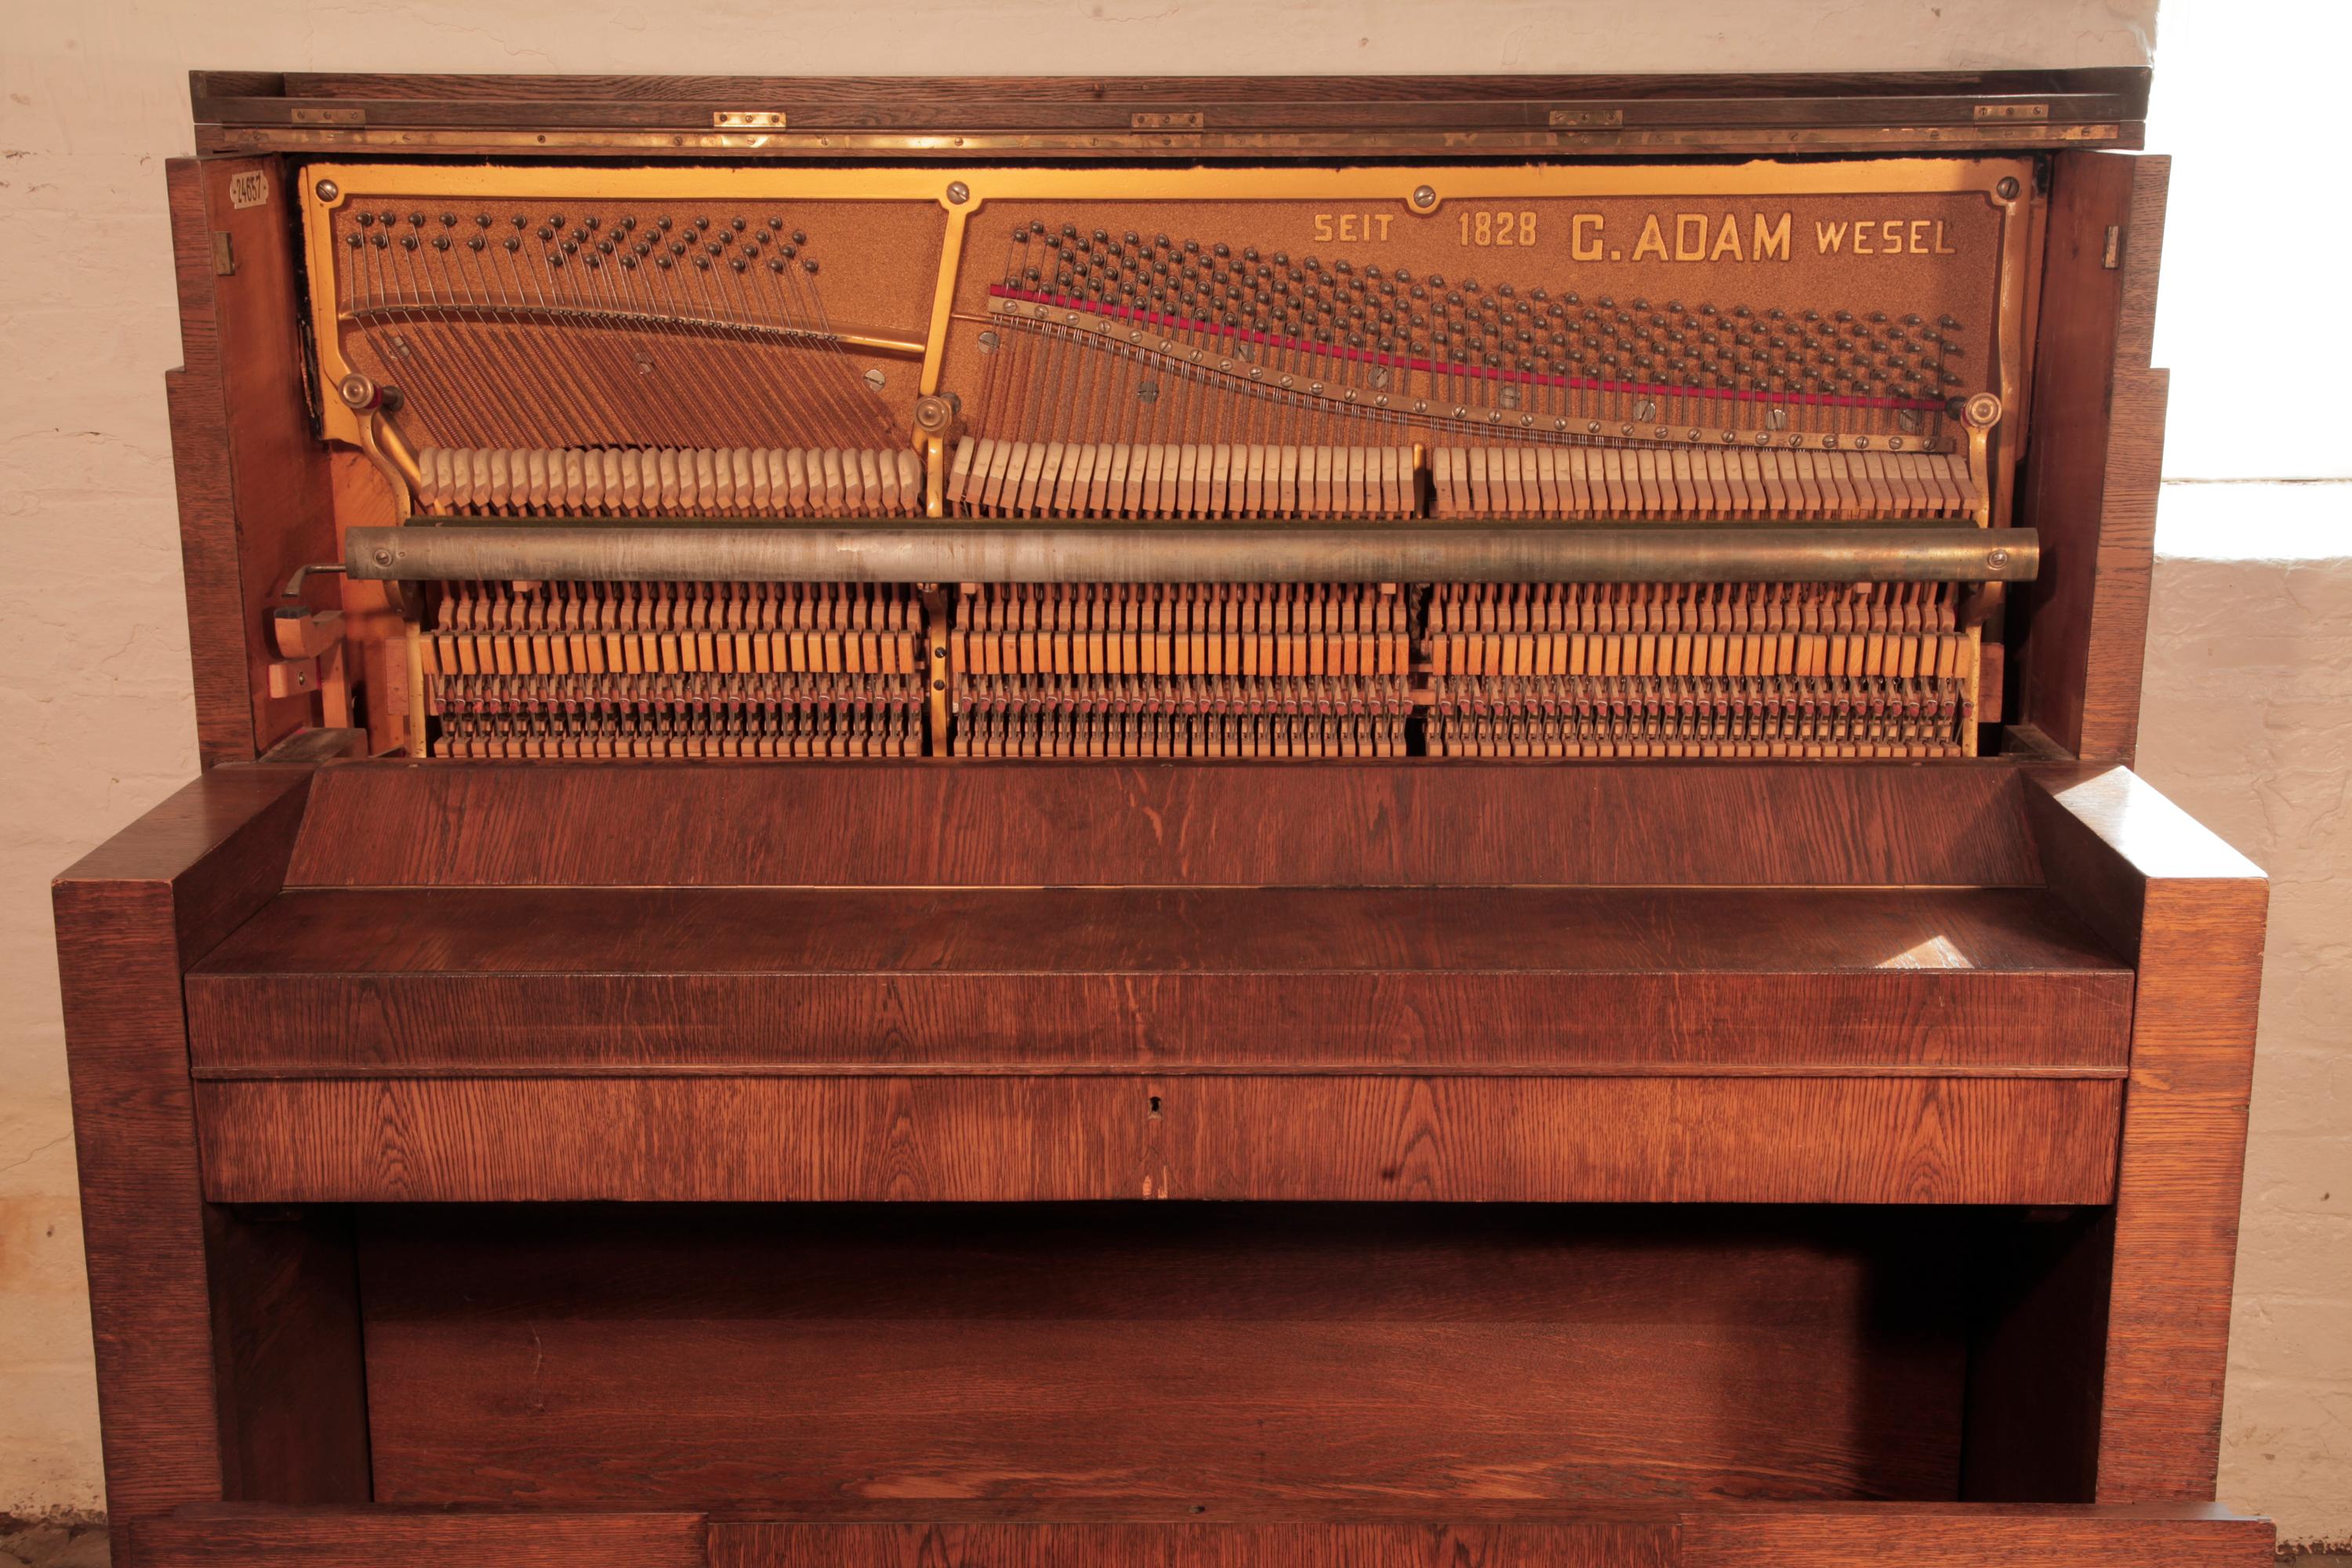 Gerhard Adams Modulare Klavierhocker aus Eiche im brutalistischen Stil mit Aggressiven Linien 2